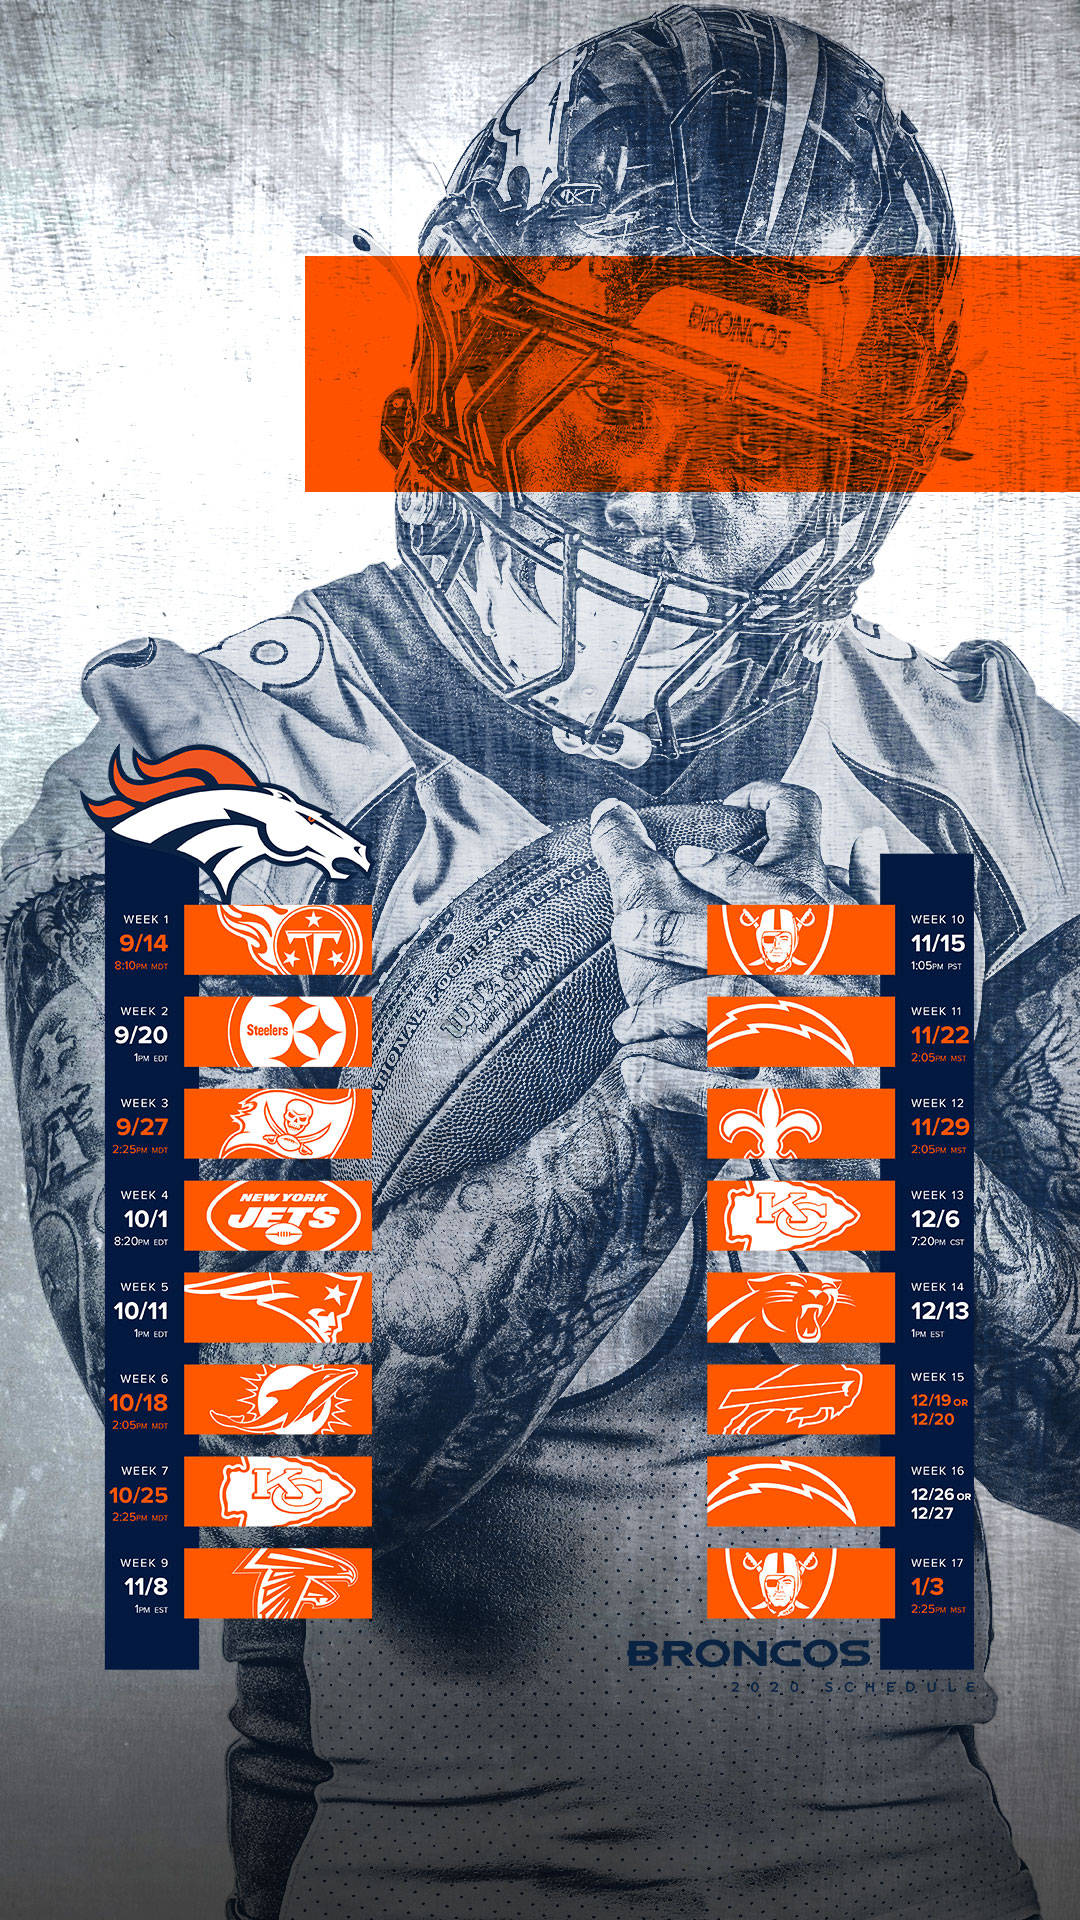 Fondosde Pantalla De Los Denver Broncos Para Iphone. Fondo de pantalla